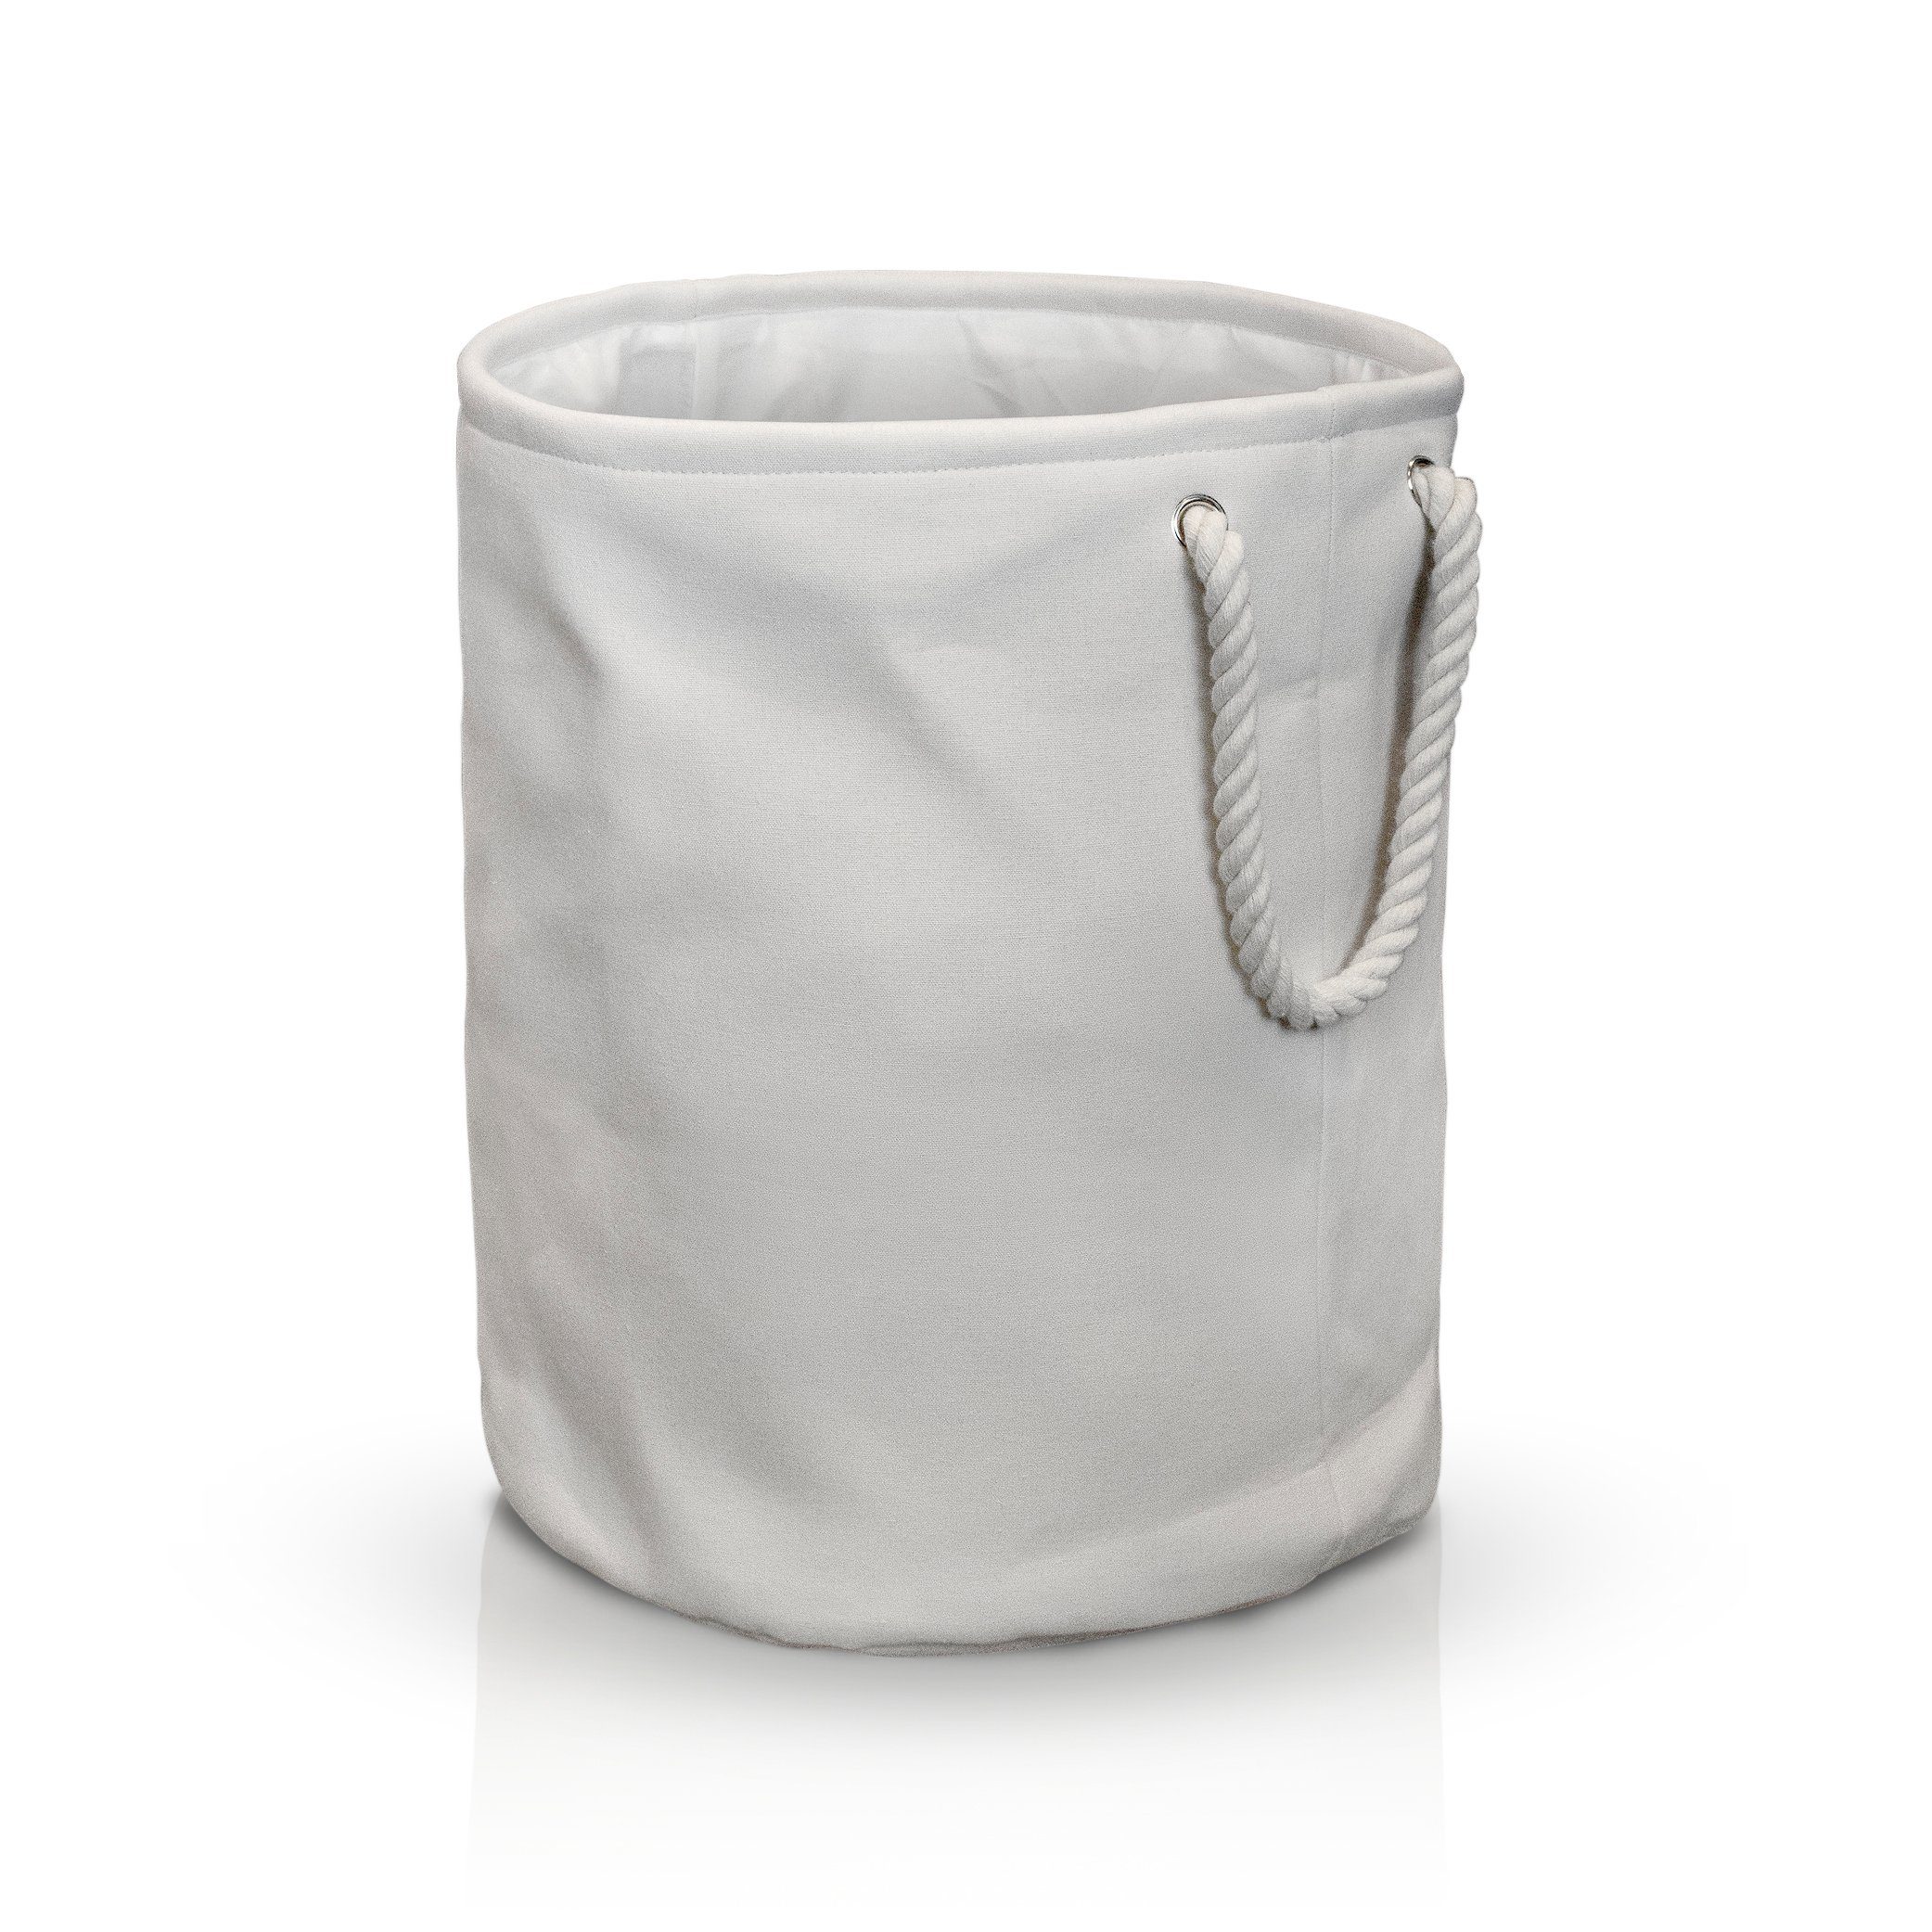 HOEL Wäschekorb Premium Wäschekorb faltbar - Wäschesack in cremeweiß mit  großem Volumen - Wäschesammler für Badezimmer, Wohnzimmer, Schlafzimmer